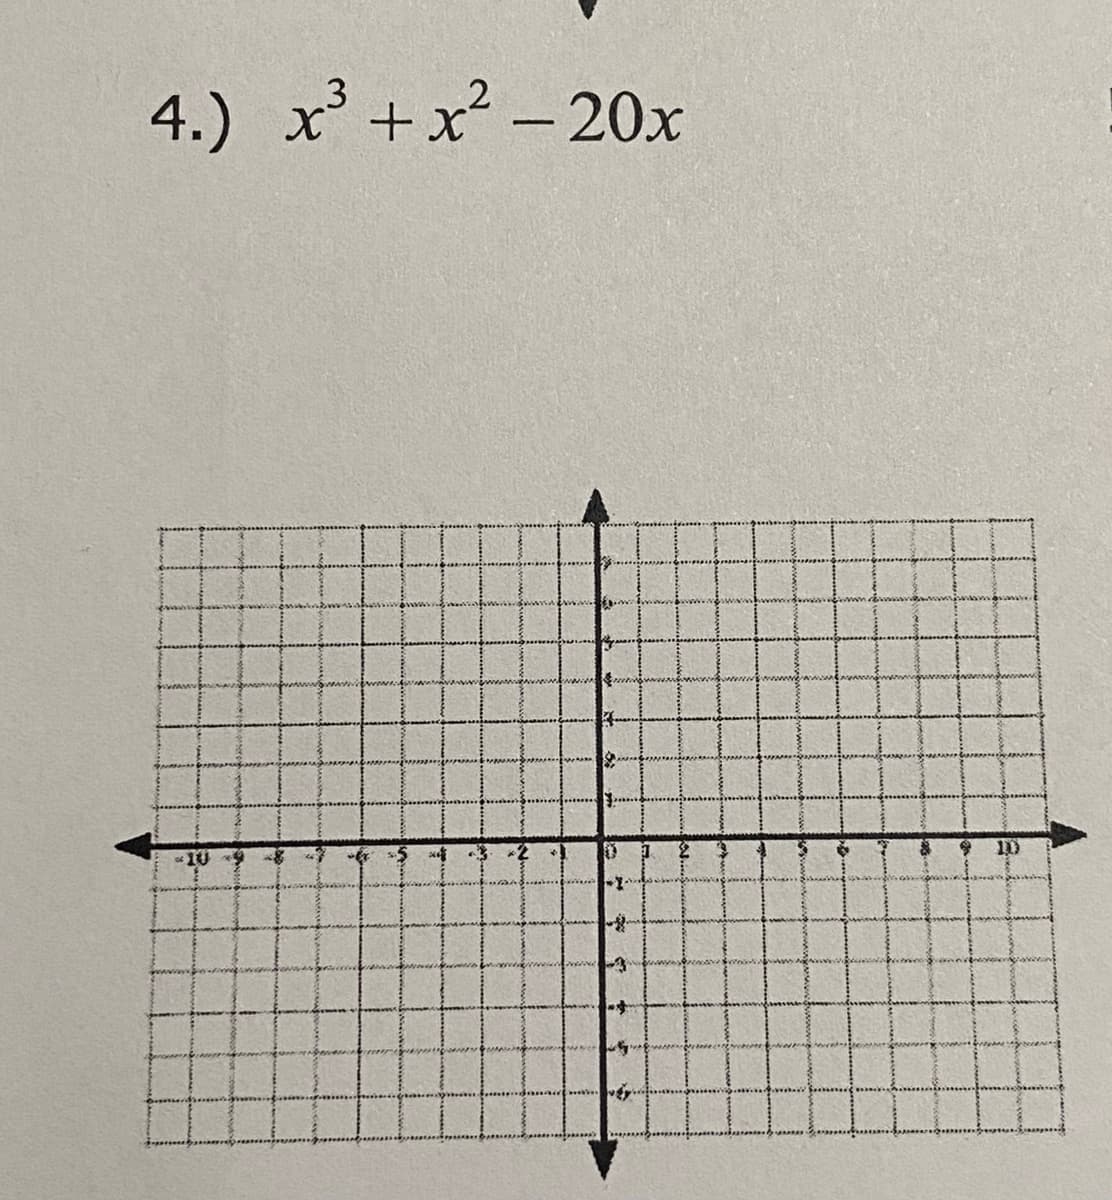 4.) x +x? - 20x
10
